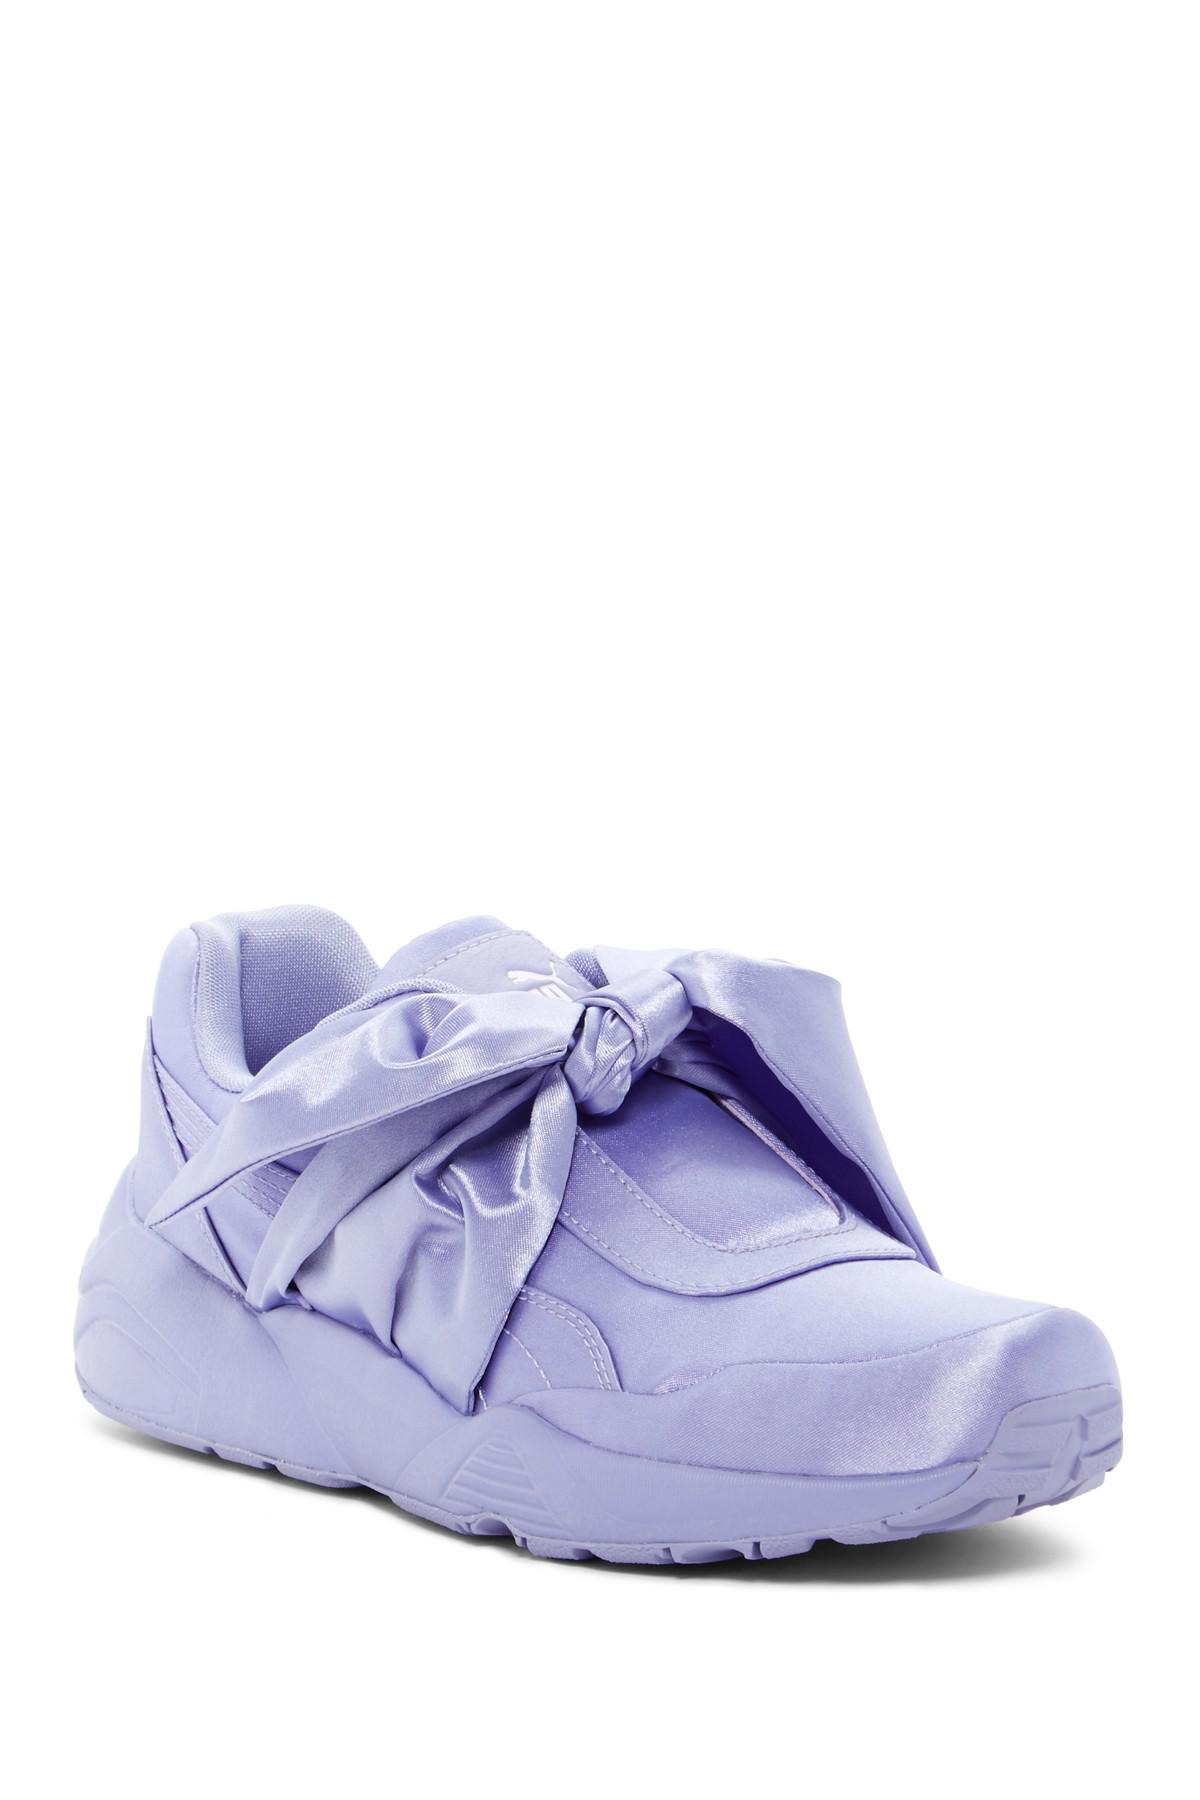 PUMA Satin Fenty By Rihanna Bow Sneaker in Pink/Purple (Blue) | Lyst